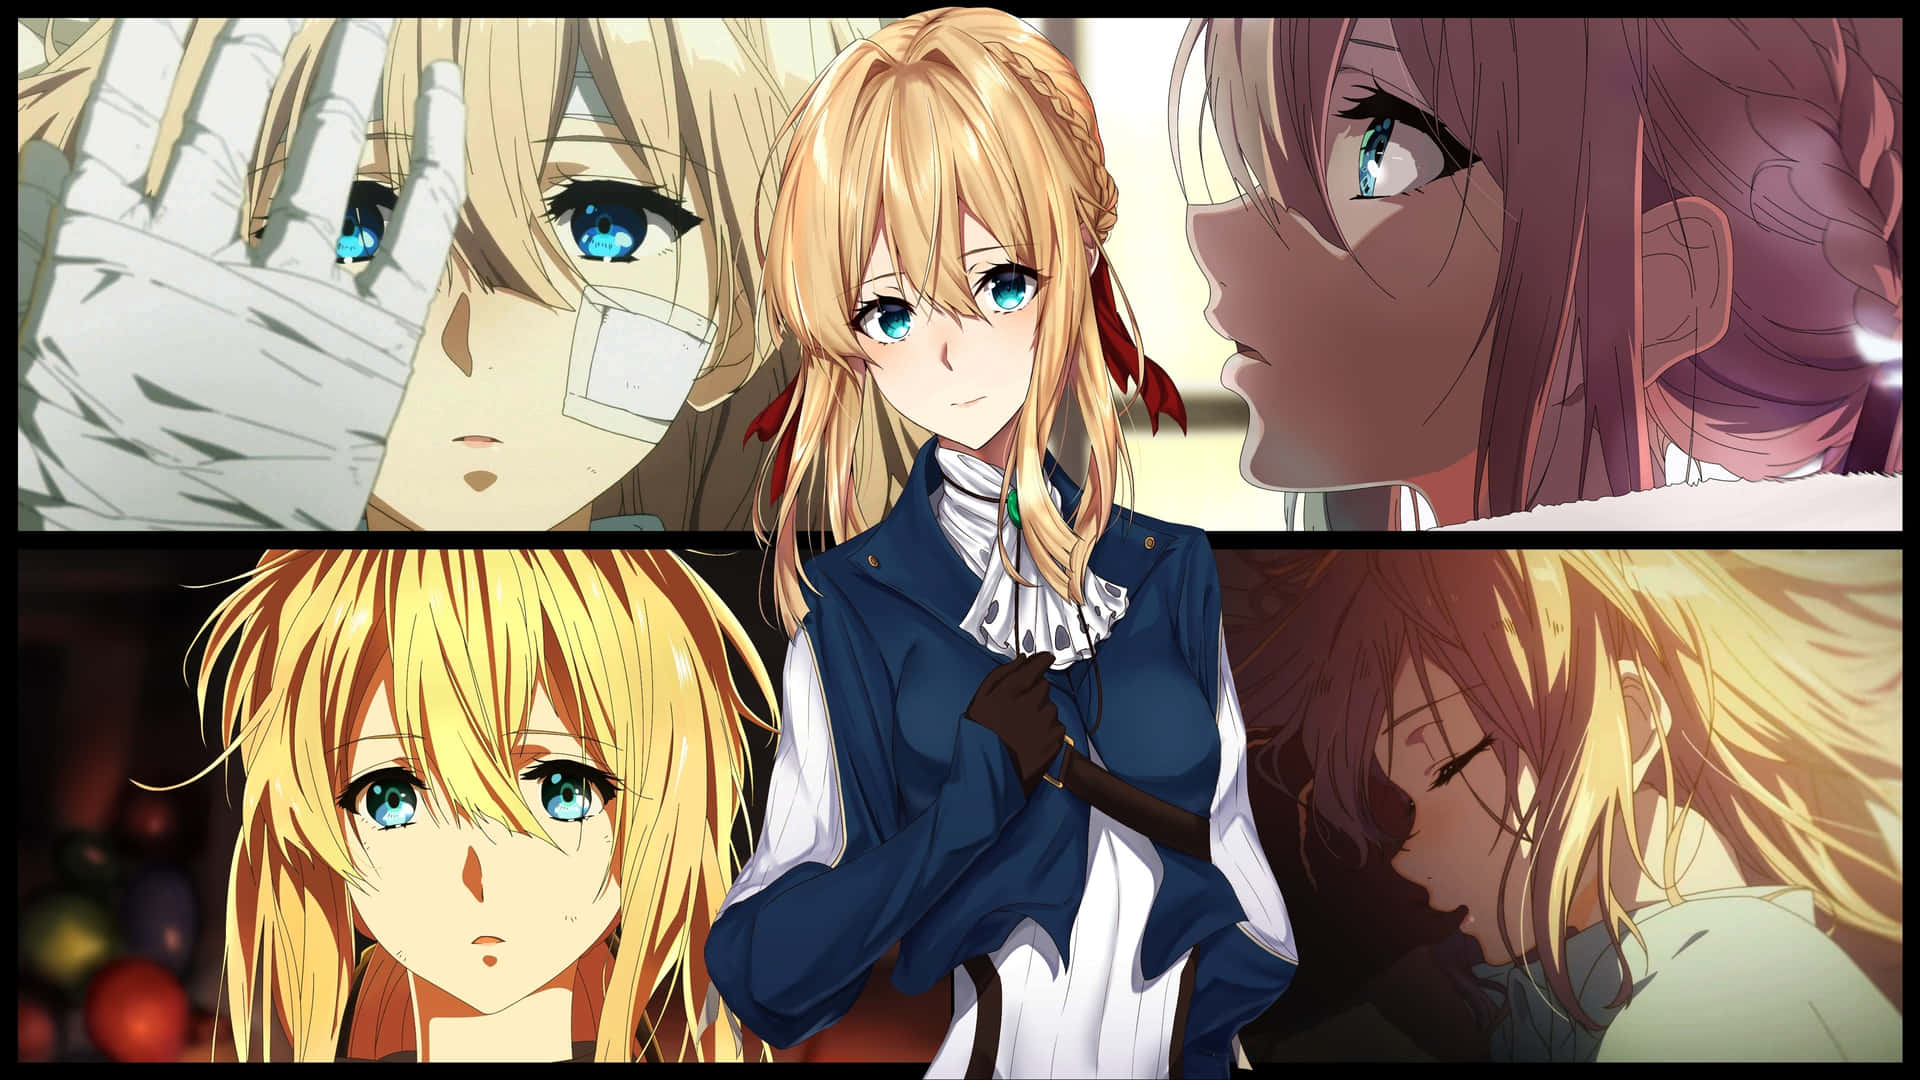 Increíblefondo De Pantalla De Collage De Anime. Fondo de pantalla